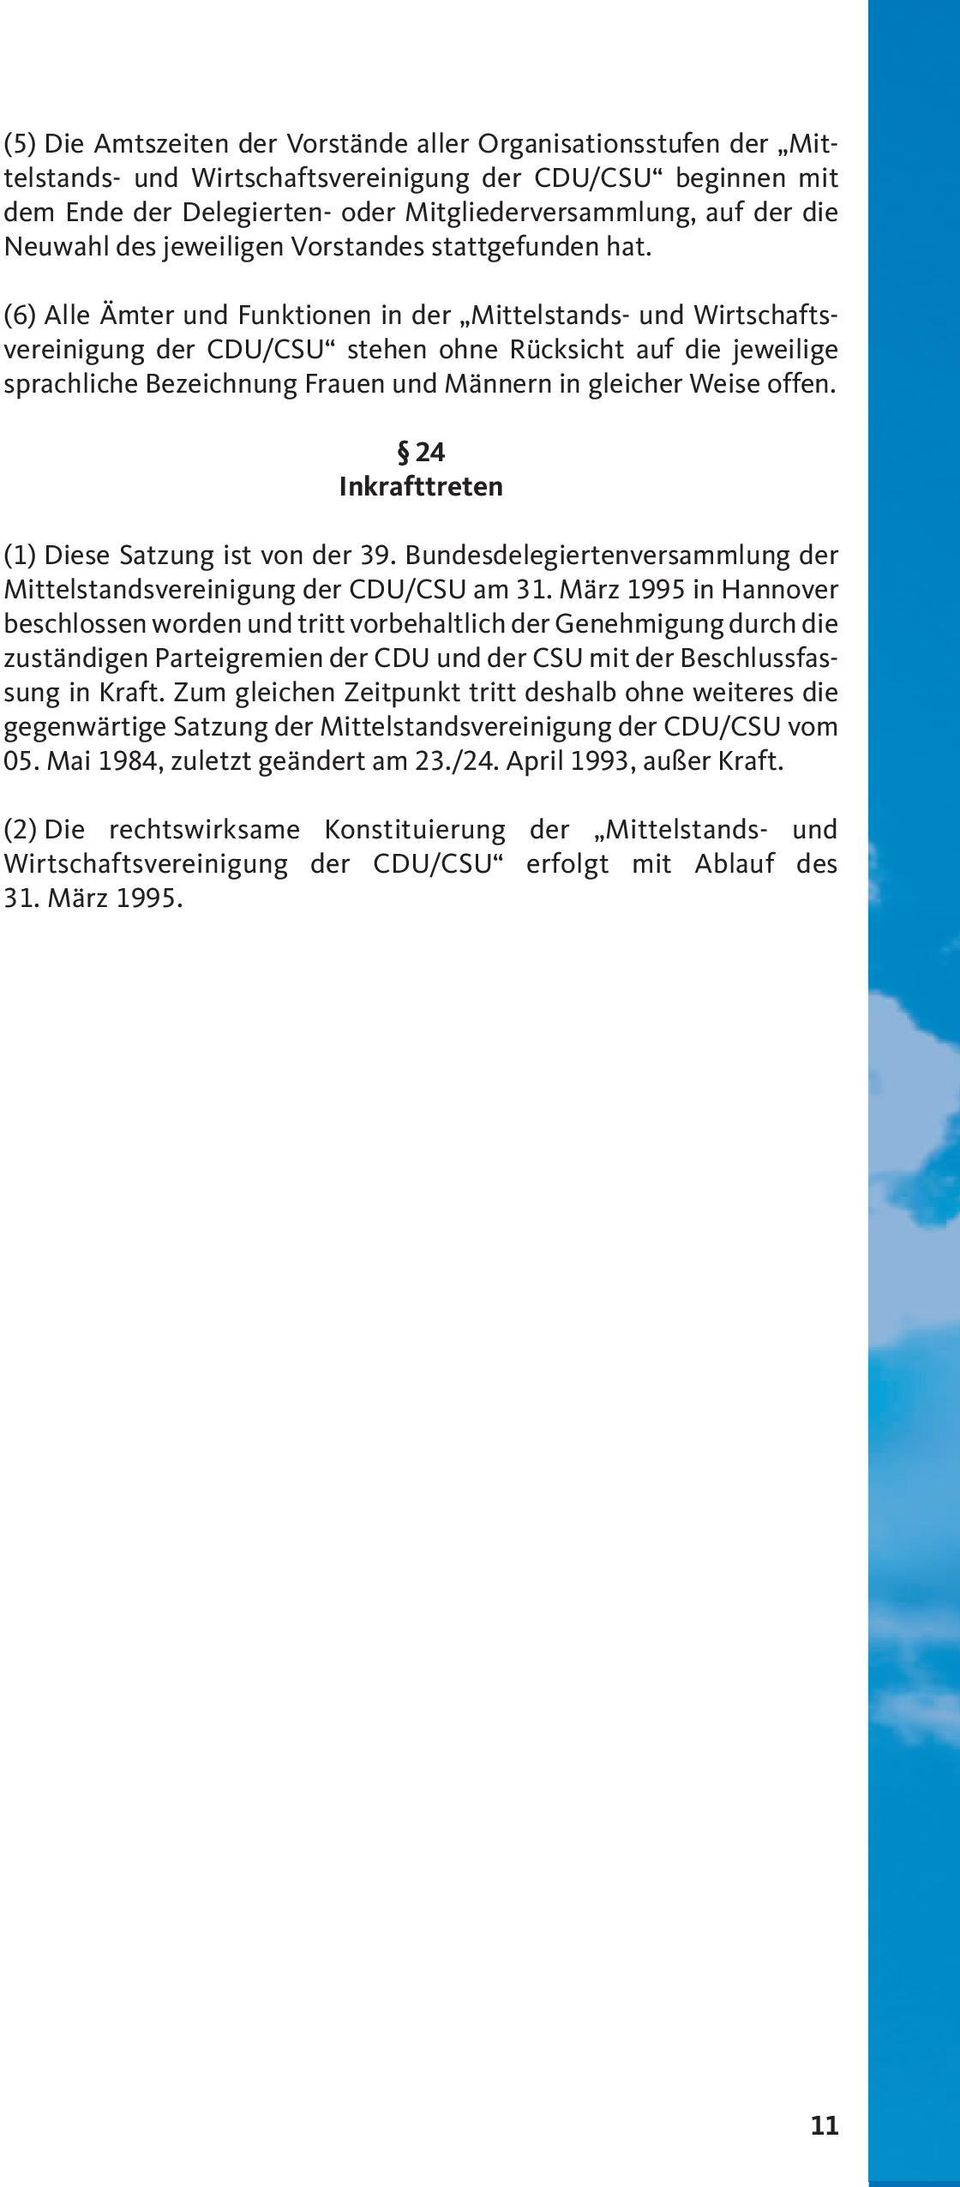 (6) Alle Ämter und Funktionen in der Mittelstands- und Wirtschaftsvereinigung der CDU/CSU stehen ohne Rücksicht auf die jeweilige sprachliche Bezeichnung Frauen und Männern in gleicher Weise offen.